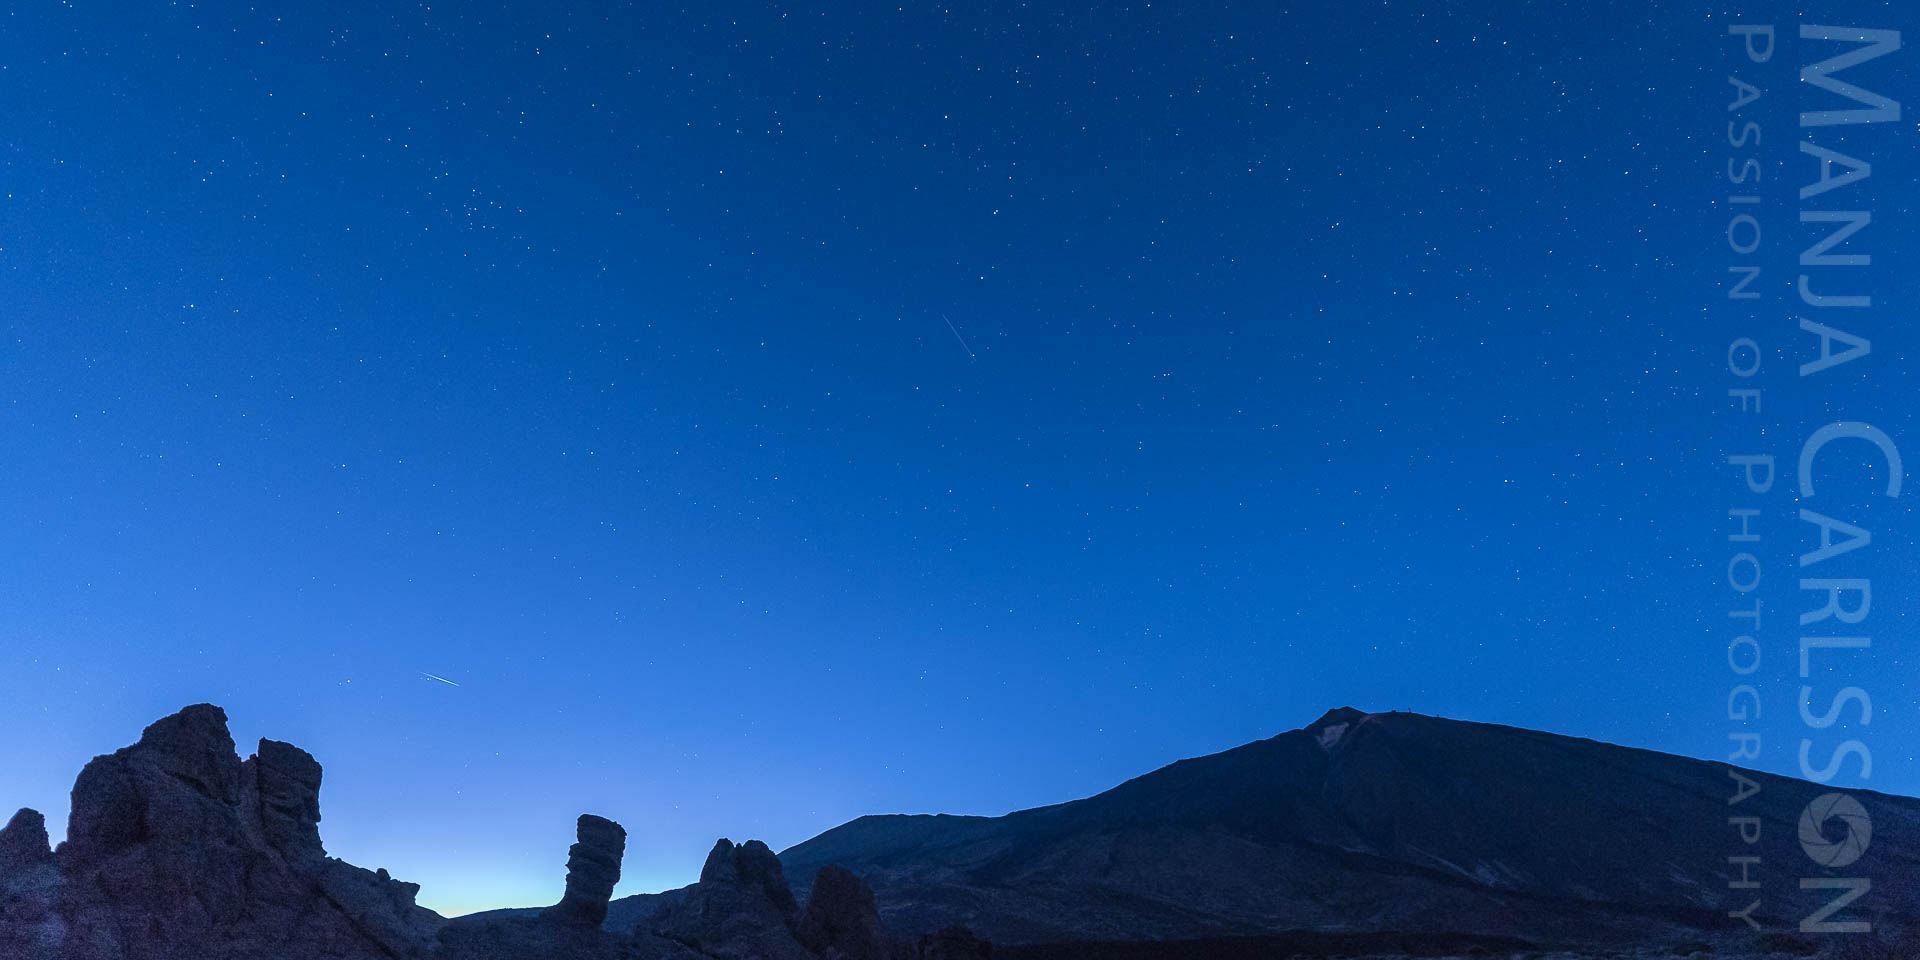 blaue Stunde auf Teneriffa am Mirador llano de Ucanaca - Teide mit Finger Gottes, Großer Wagen, ISS Überflug und Meteor /Sternschnuppe